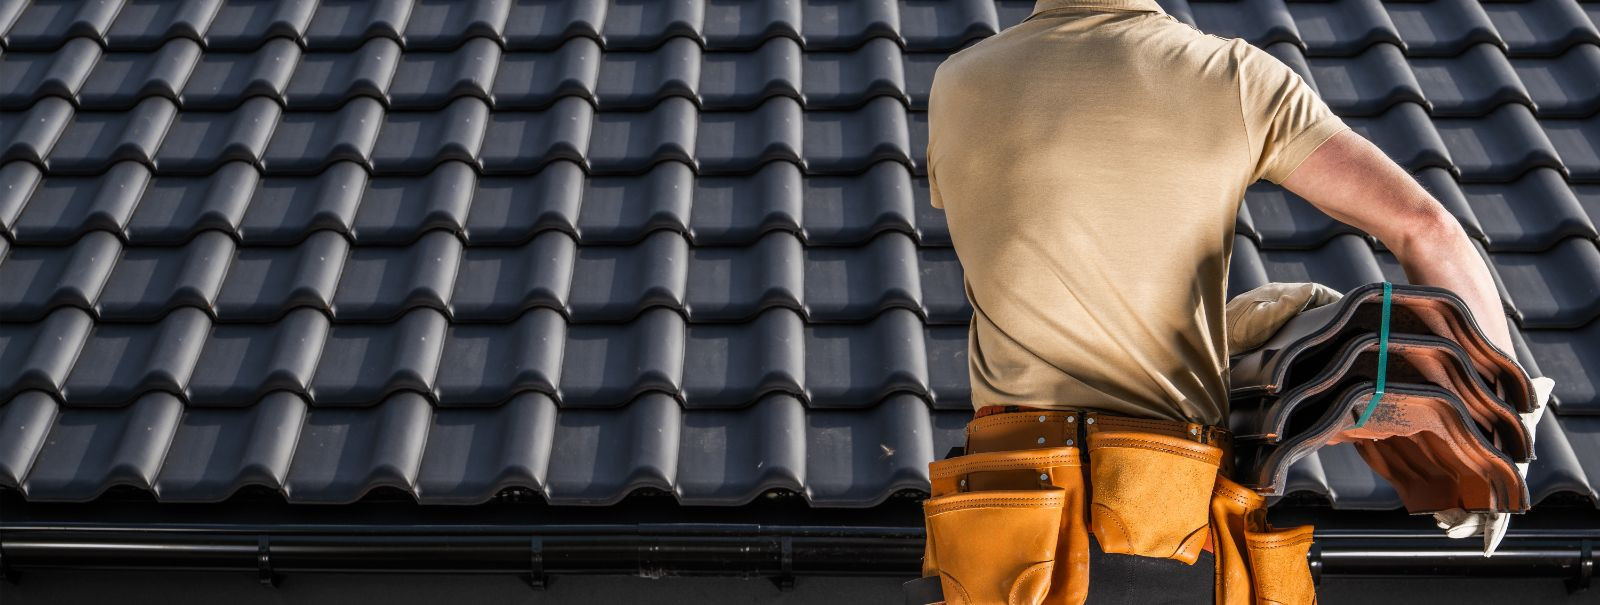 Oma katuse terviklikkuse säilitamine on oluline teie vara ohutuse ja pikaealisuse tagamiseks. Regulaarne katuse hooldus aitab ära hoida lekkeid ja struktuurikah